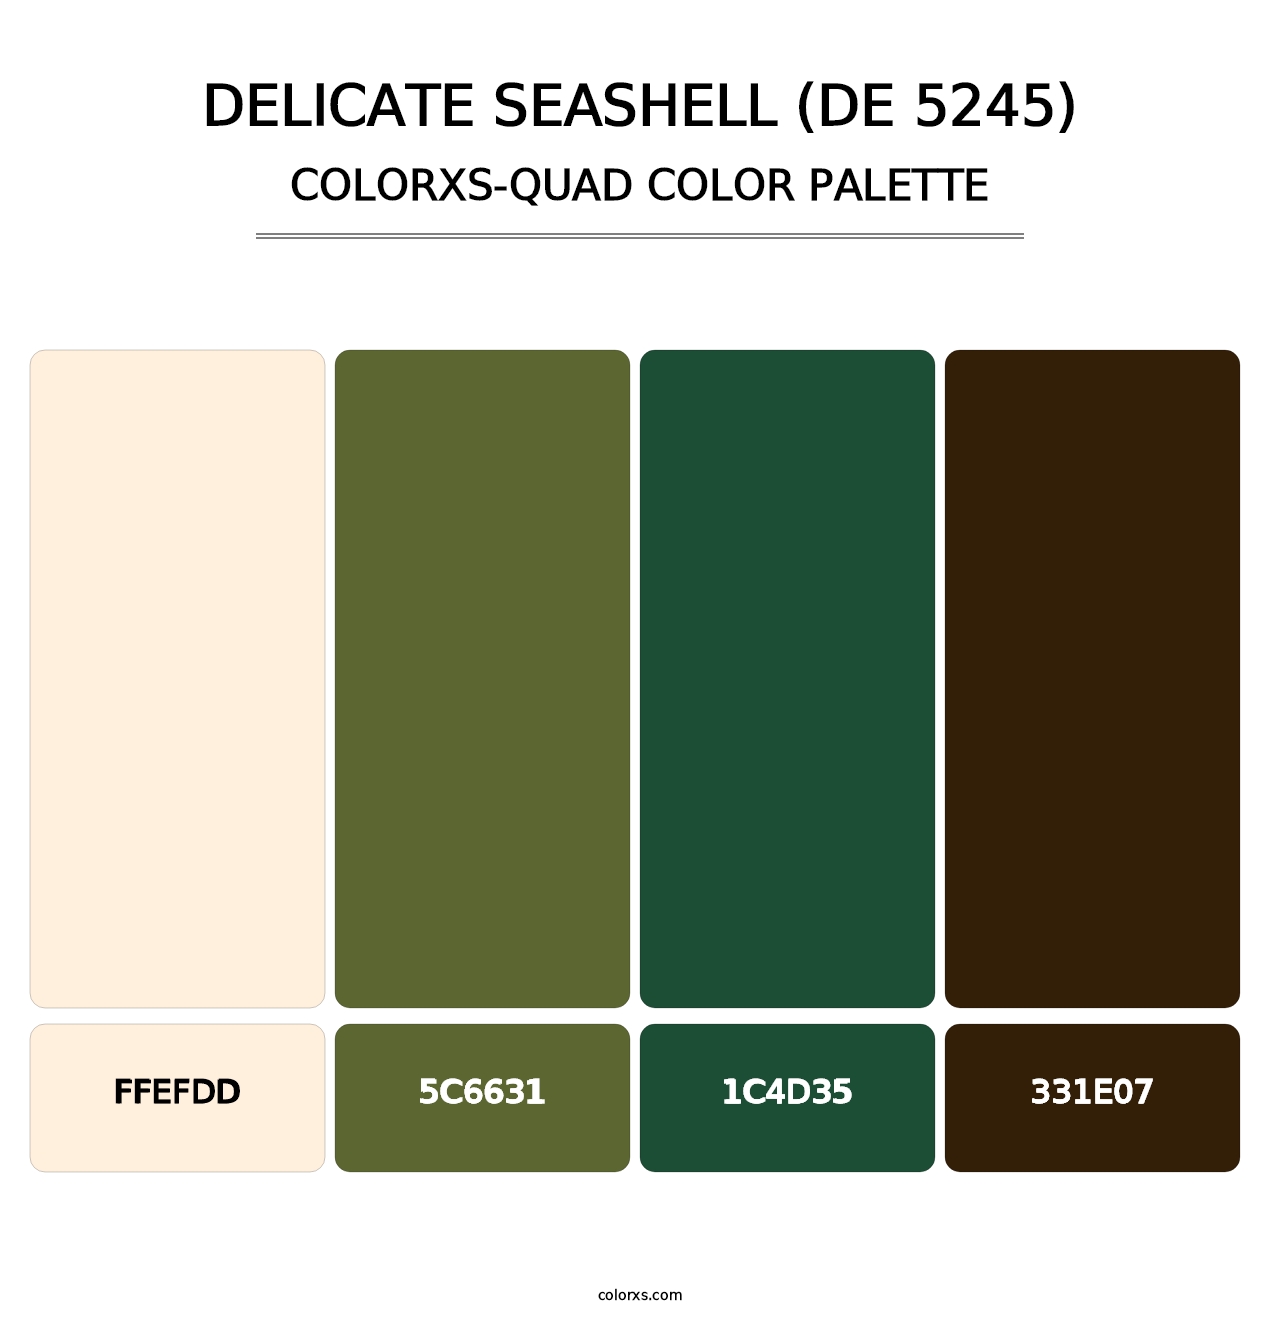 Delicate Seashell (DE 5245) - Colorxs Quad Palette